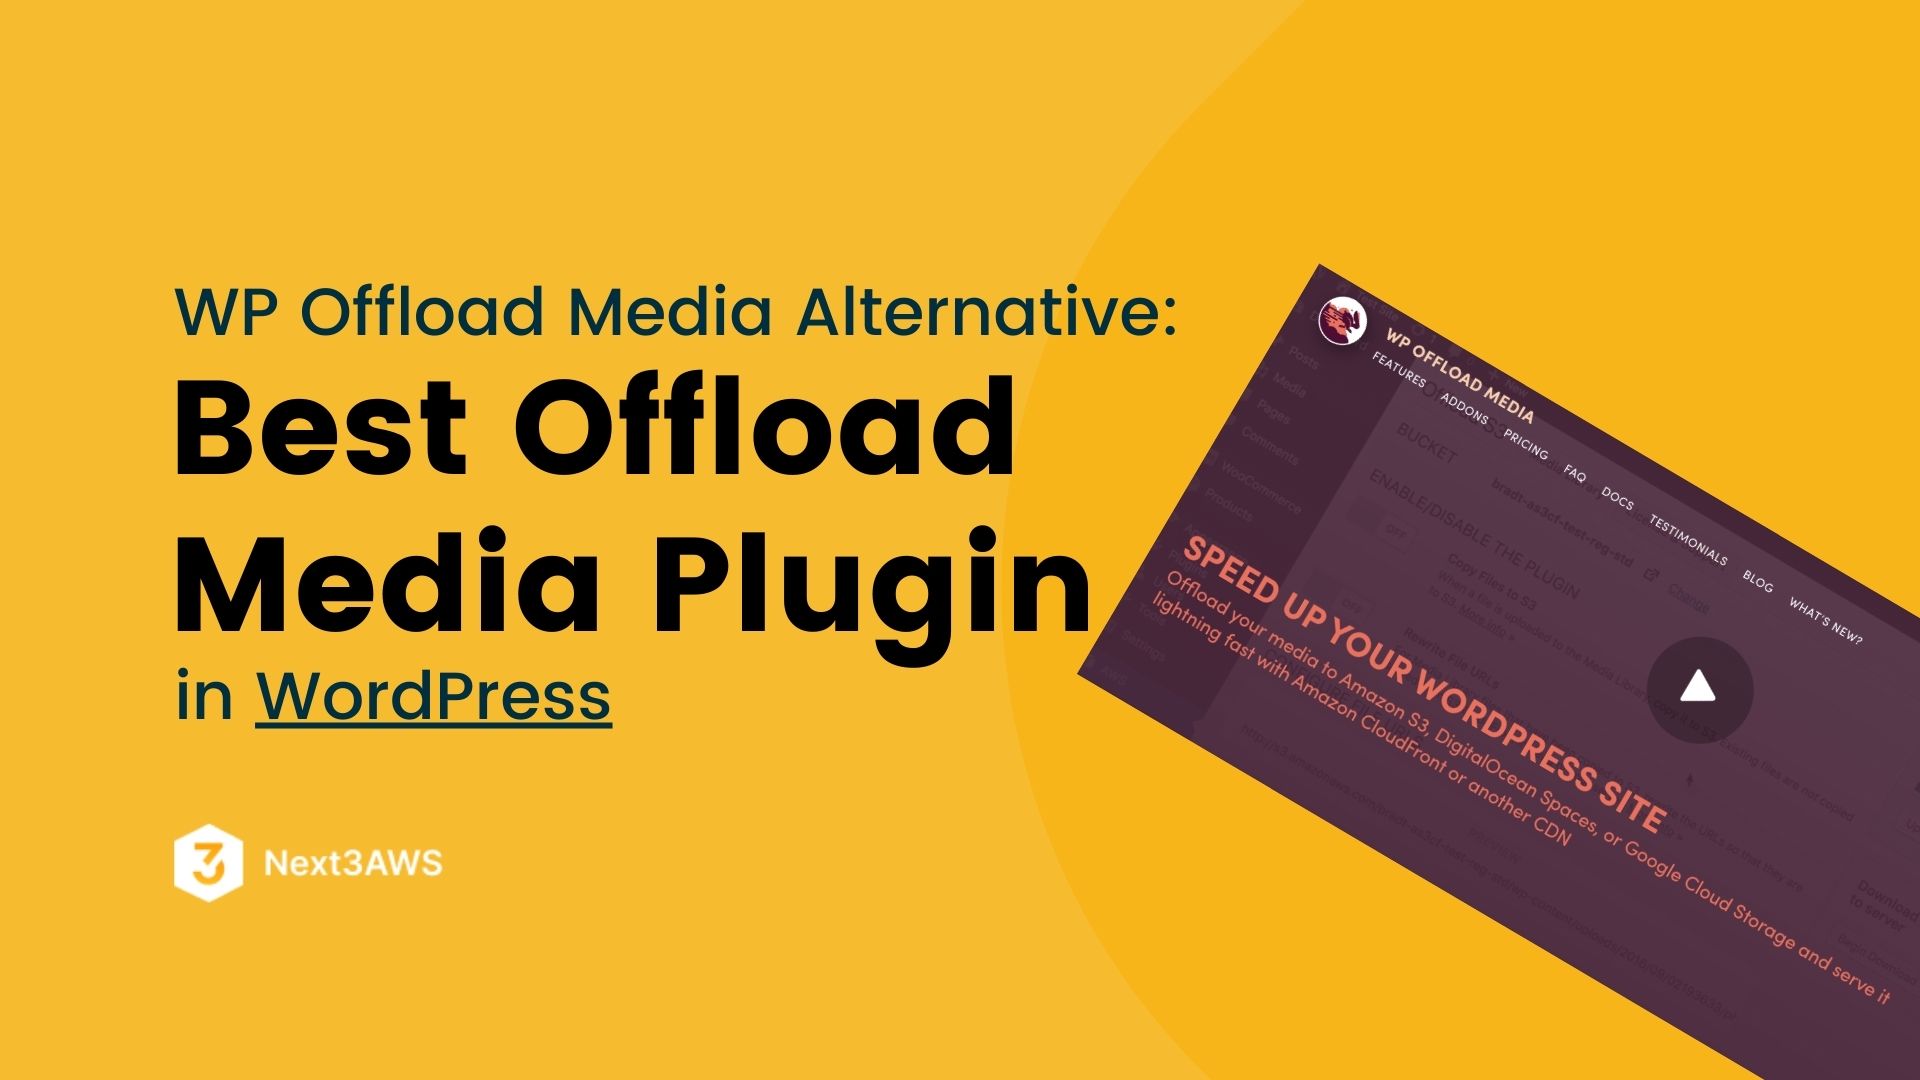 WP Offload Media Alternative: Offload WordPress Media